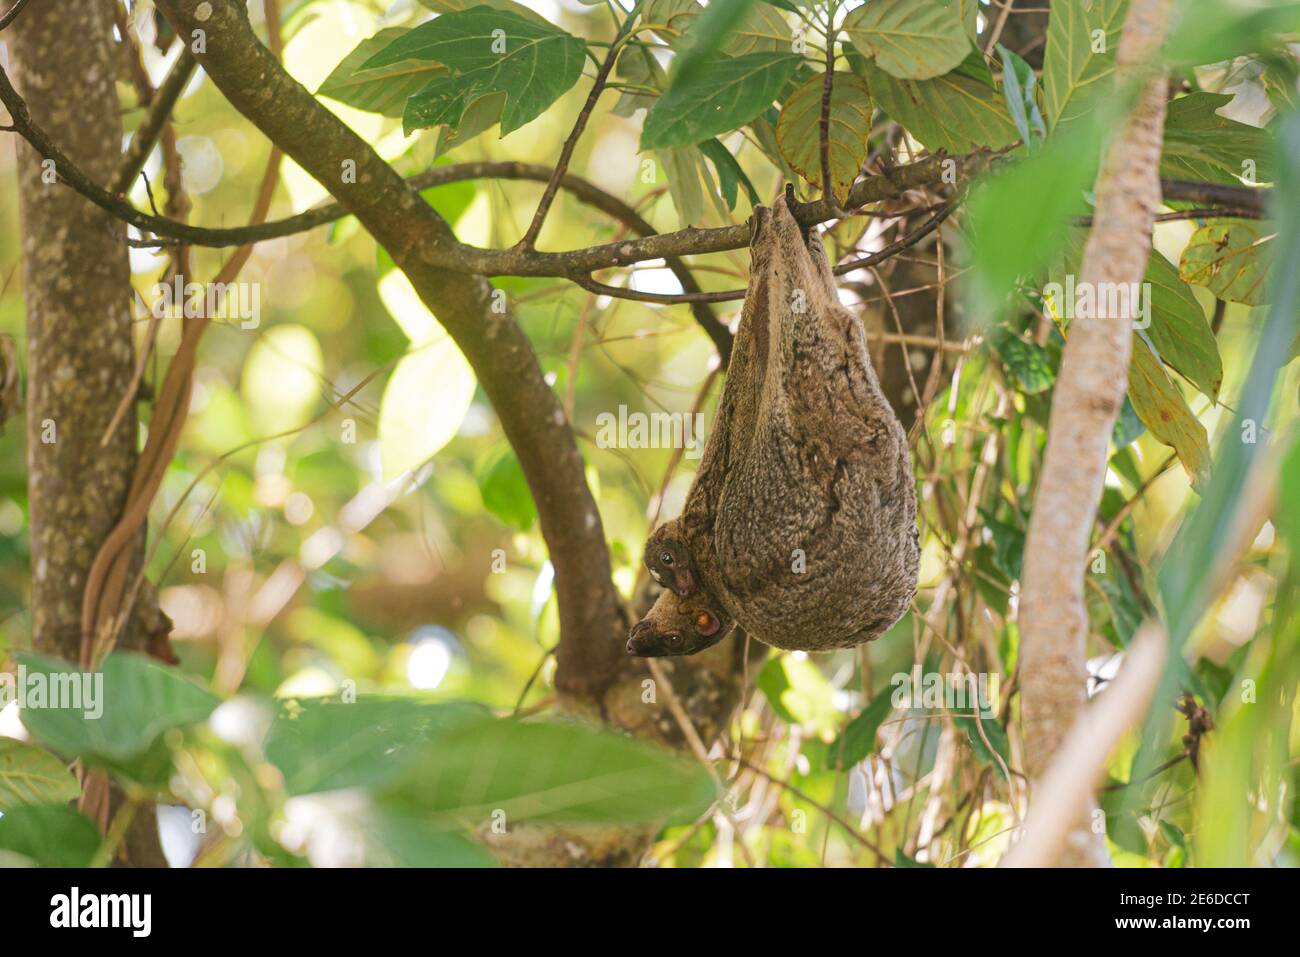 Colugo filippino o Kagwang, Volani di Cynocefalo, o Lemur filippino volante appeso da un albero con la sua razza Foto Stock